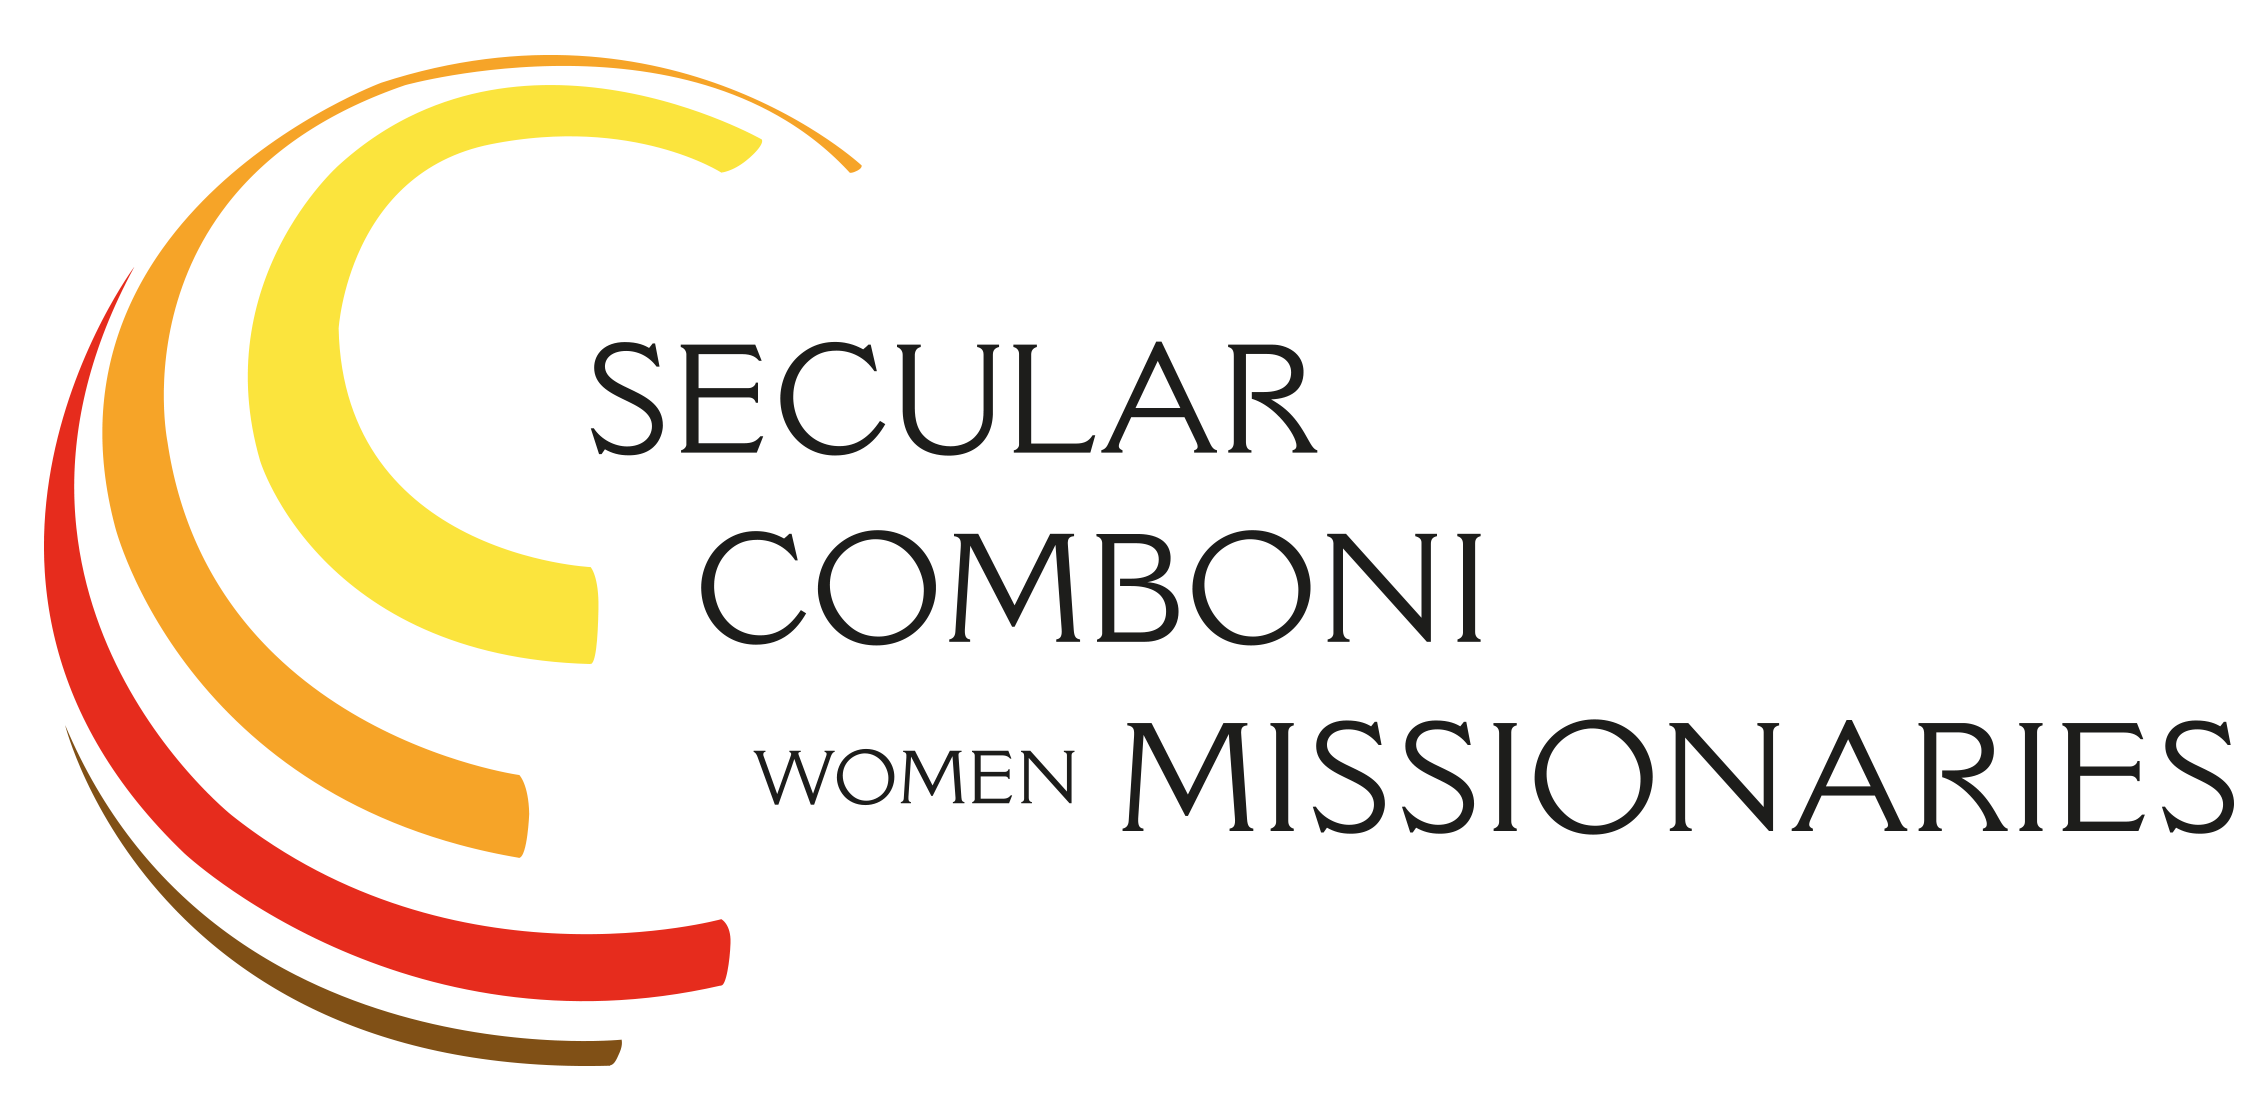 Missionarie Secolari Comboniane